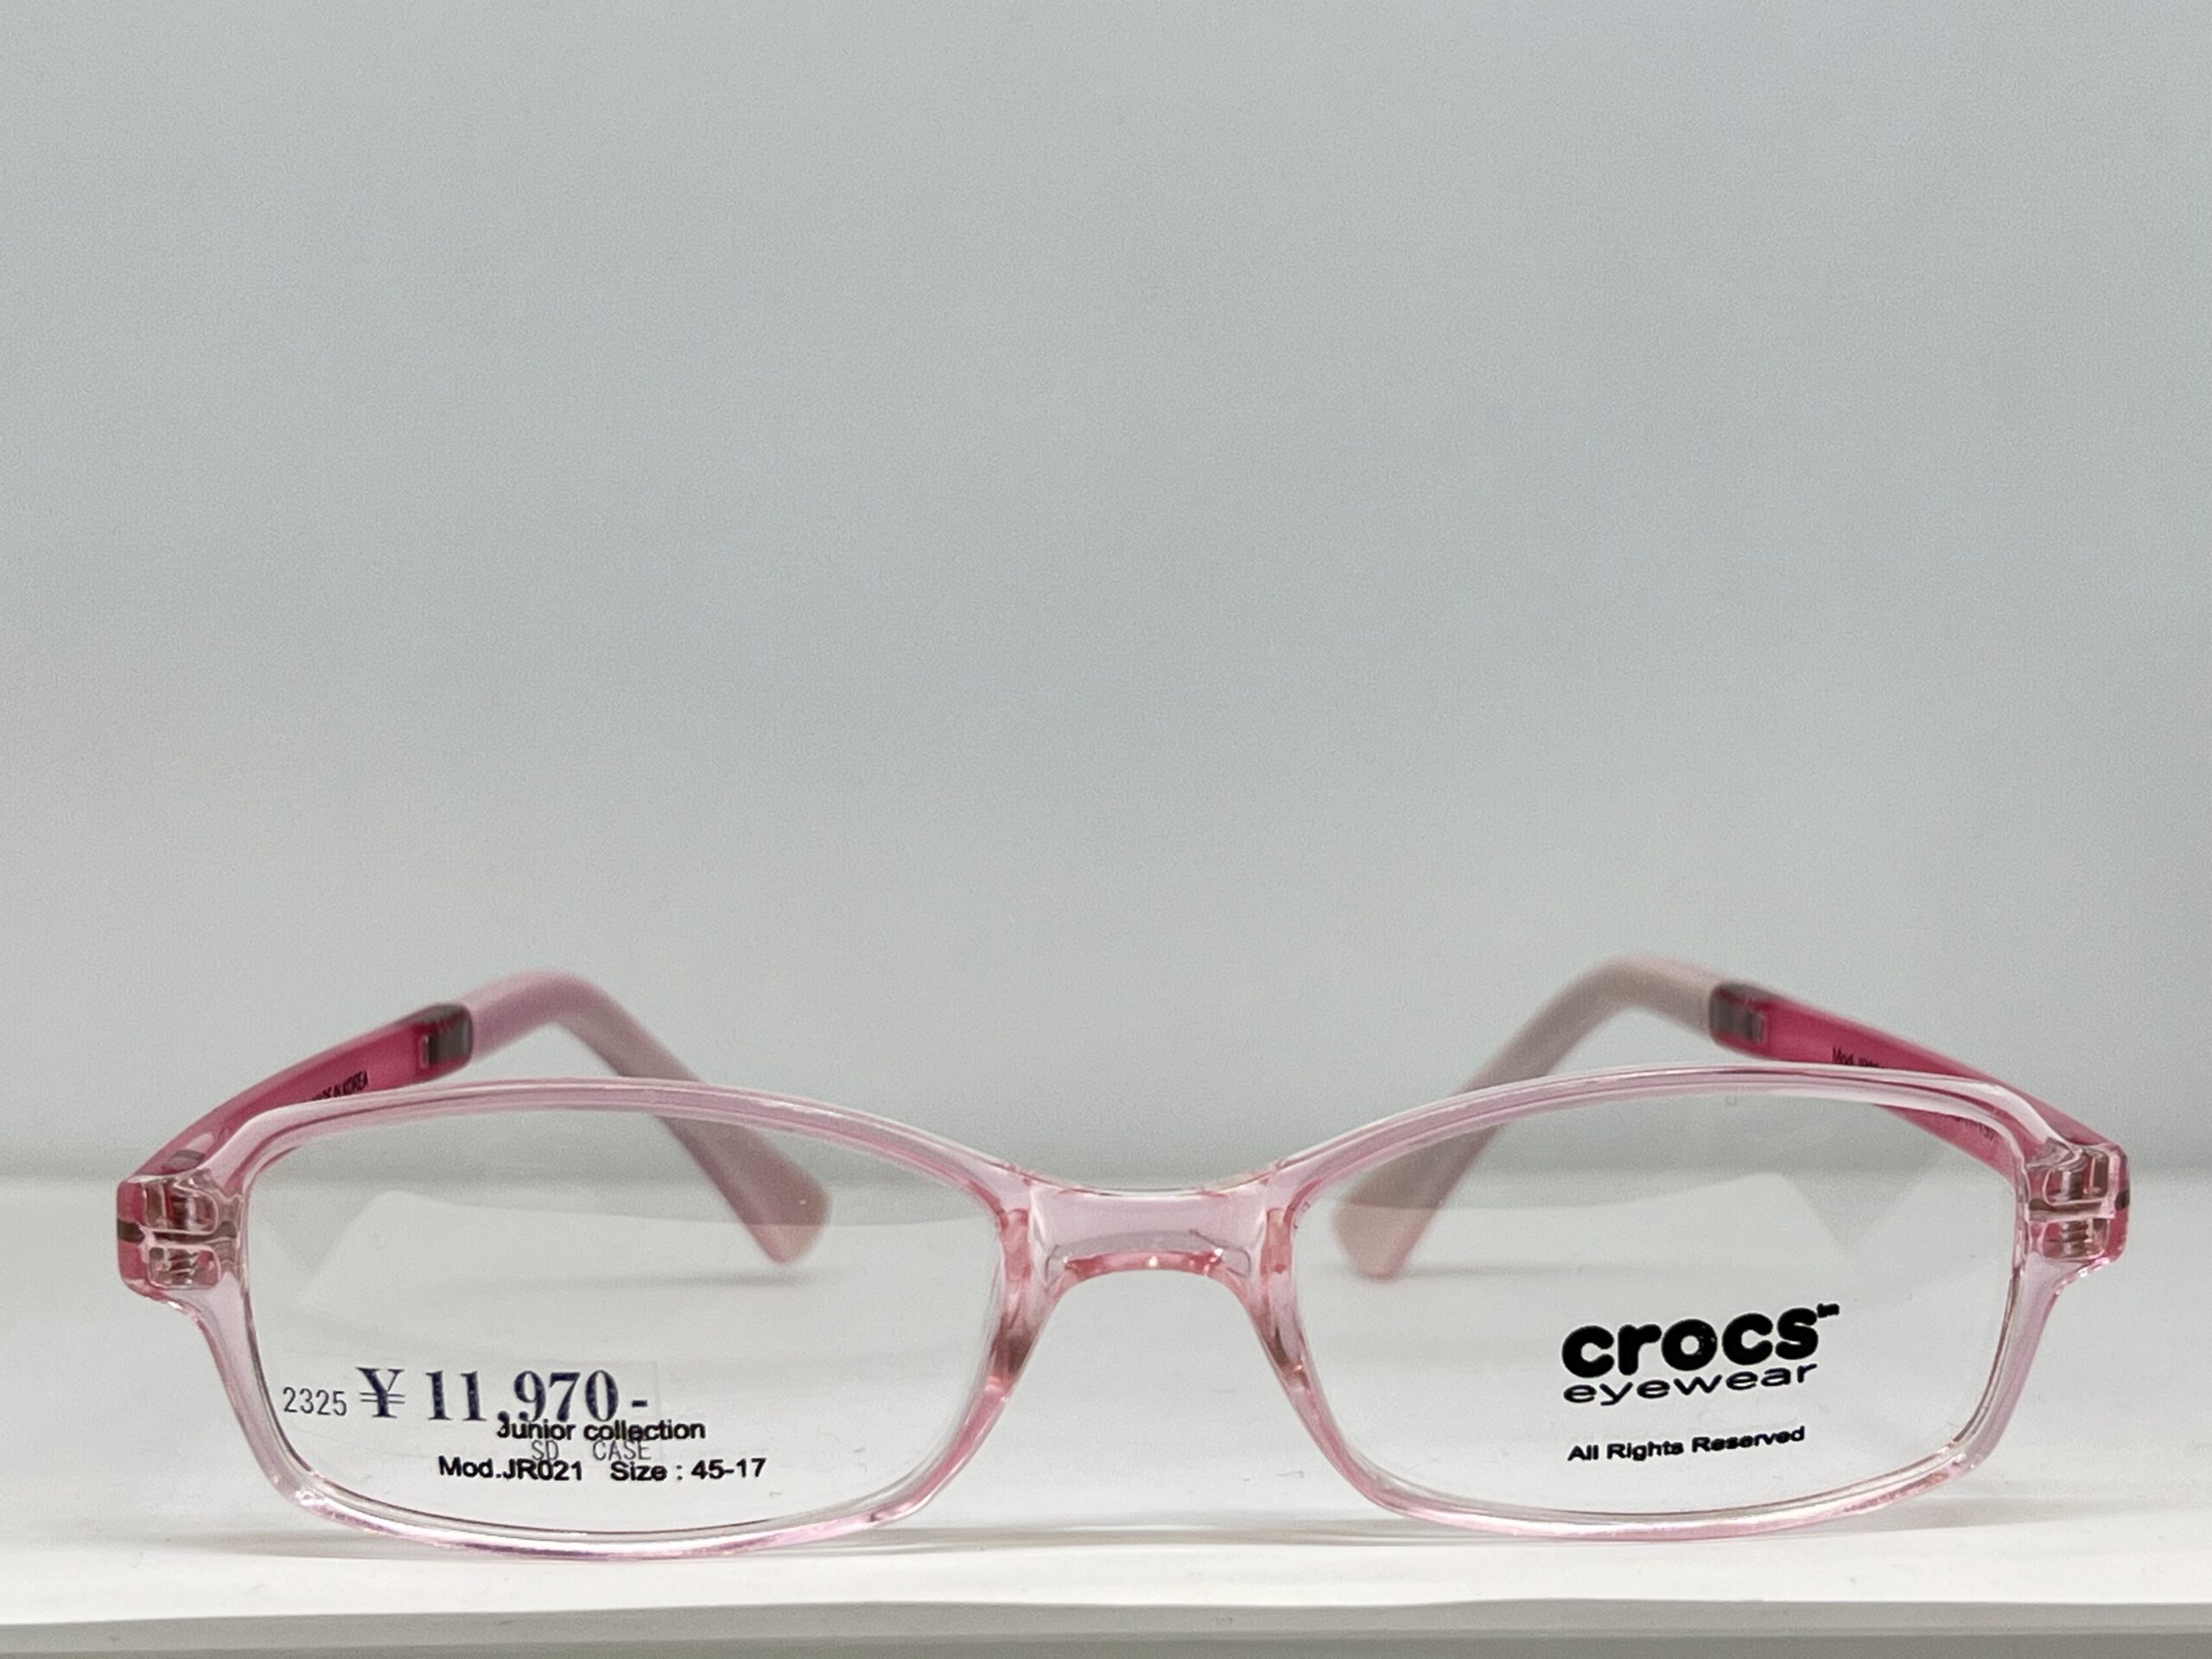 crocs eyewear Junior collection Mod.JR021スライド02